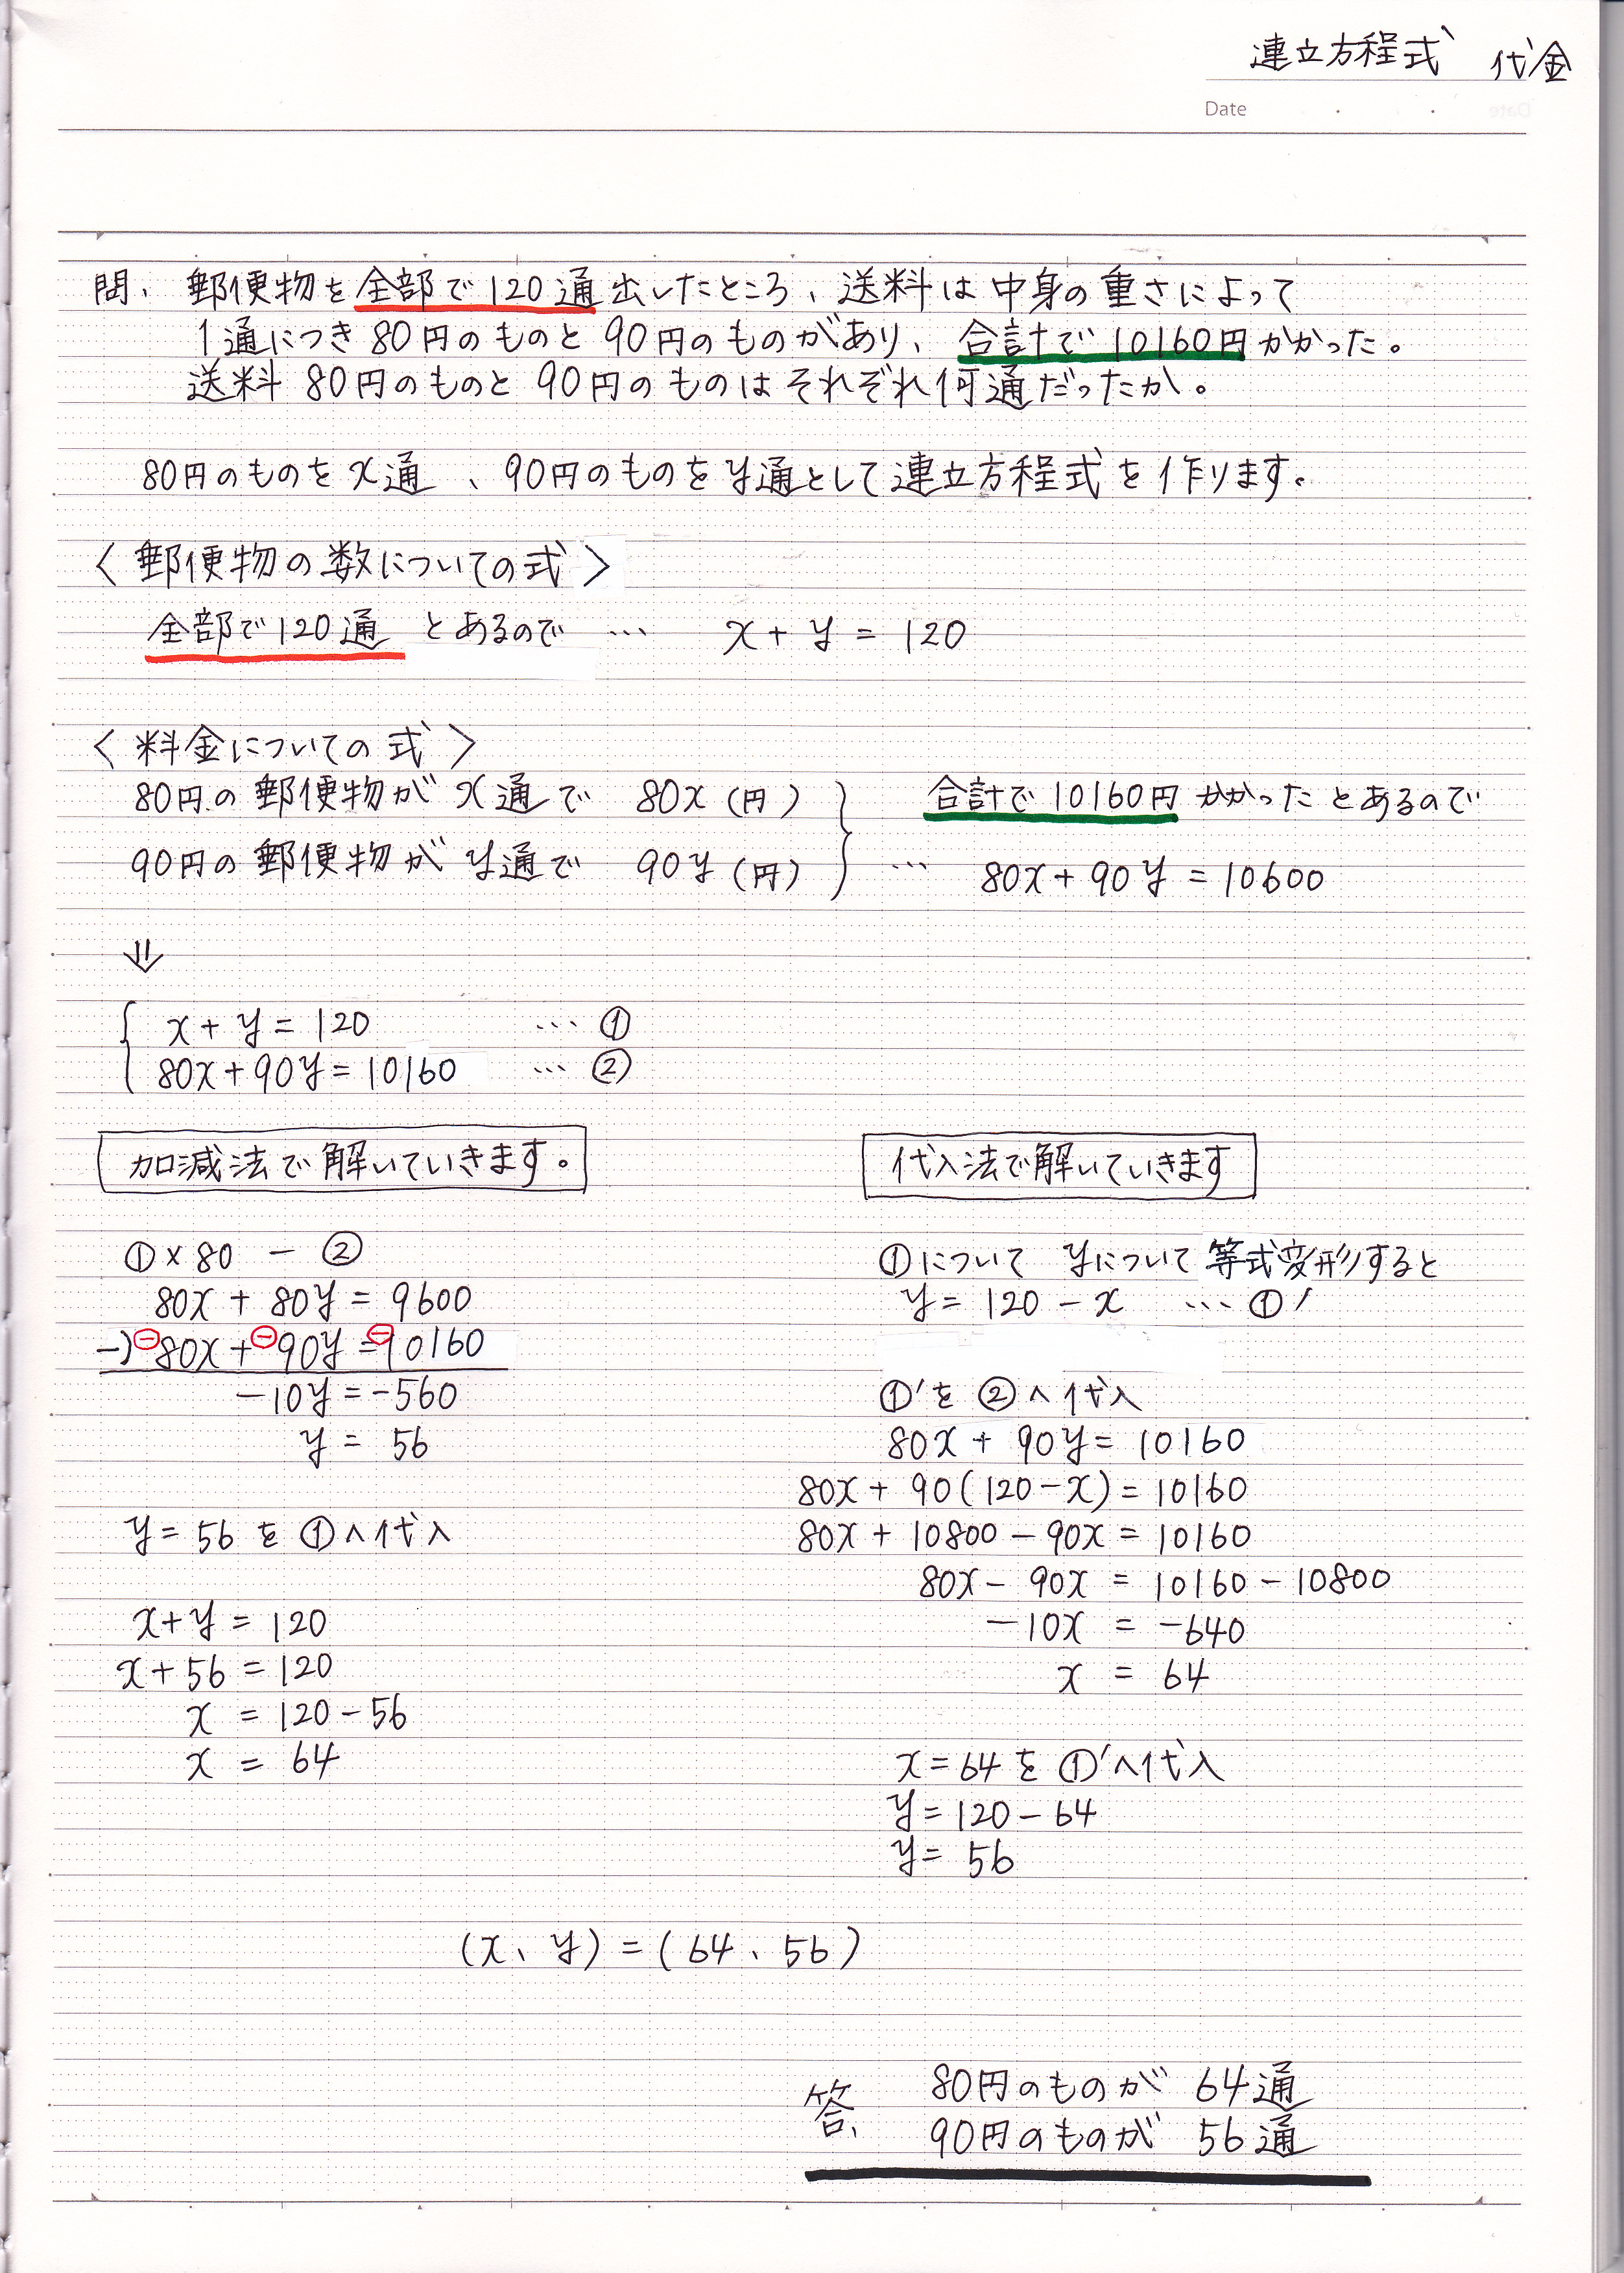 スプリット 締め切り 牛肉 中 1 数学 方程式 ノート Ciao5 Jp